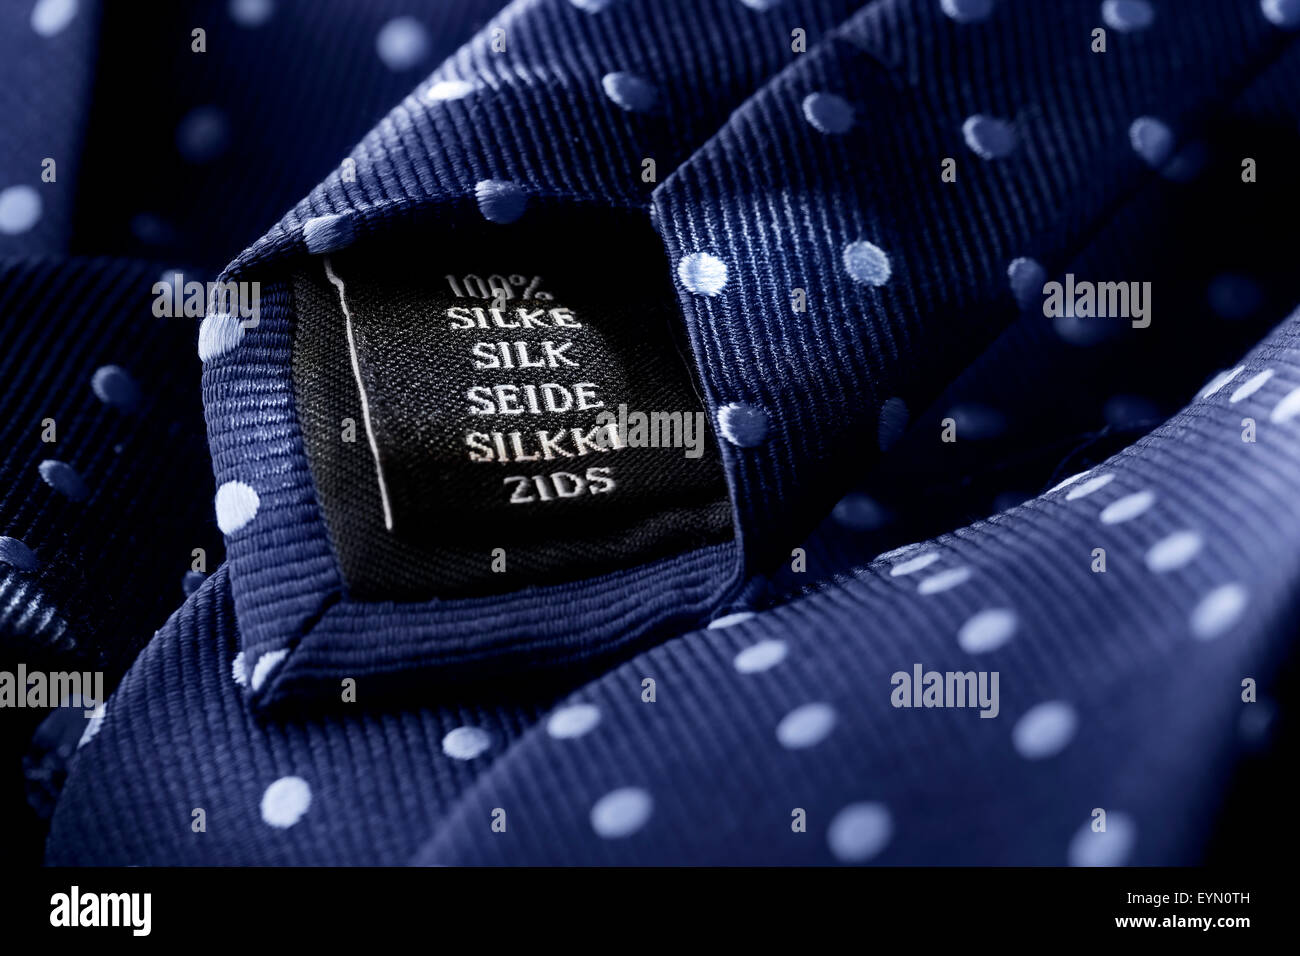 Etichetta di una cravatta di seta. Profondità di campo ridotta, la nitidezza è nella parola di seta. Foto Stock